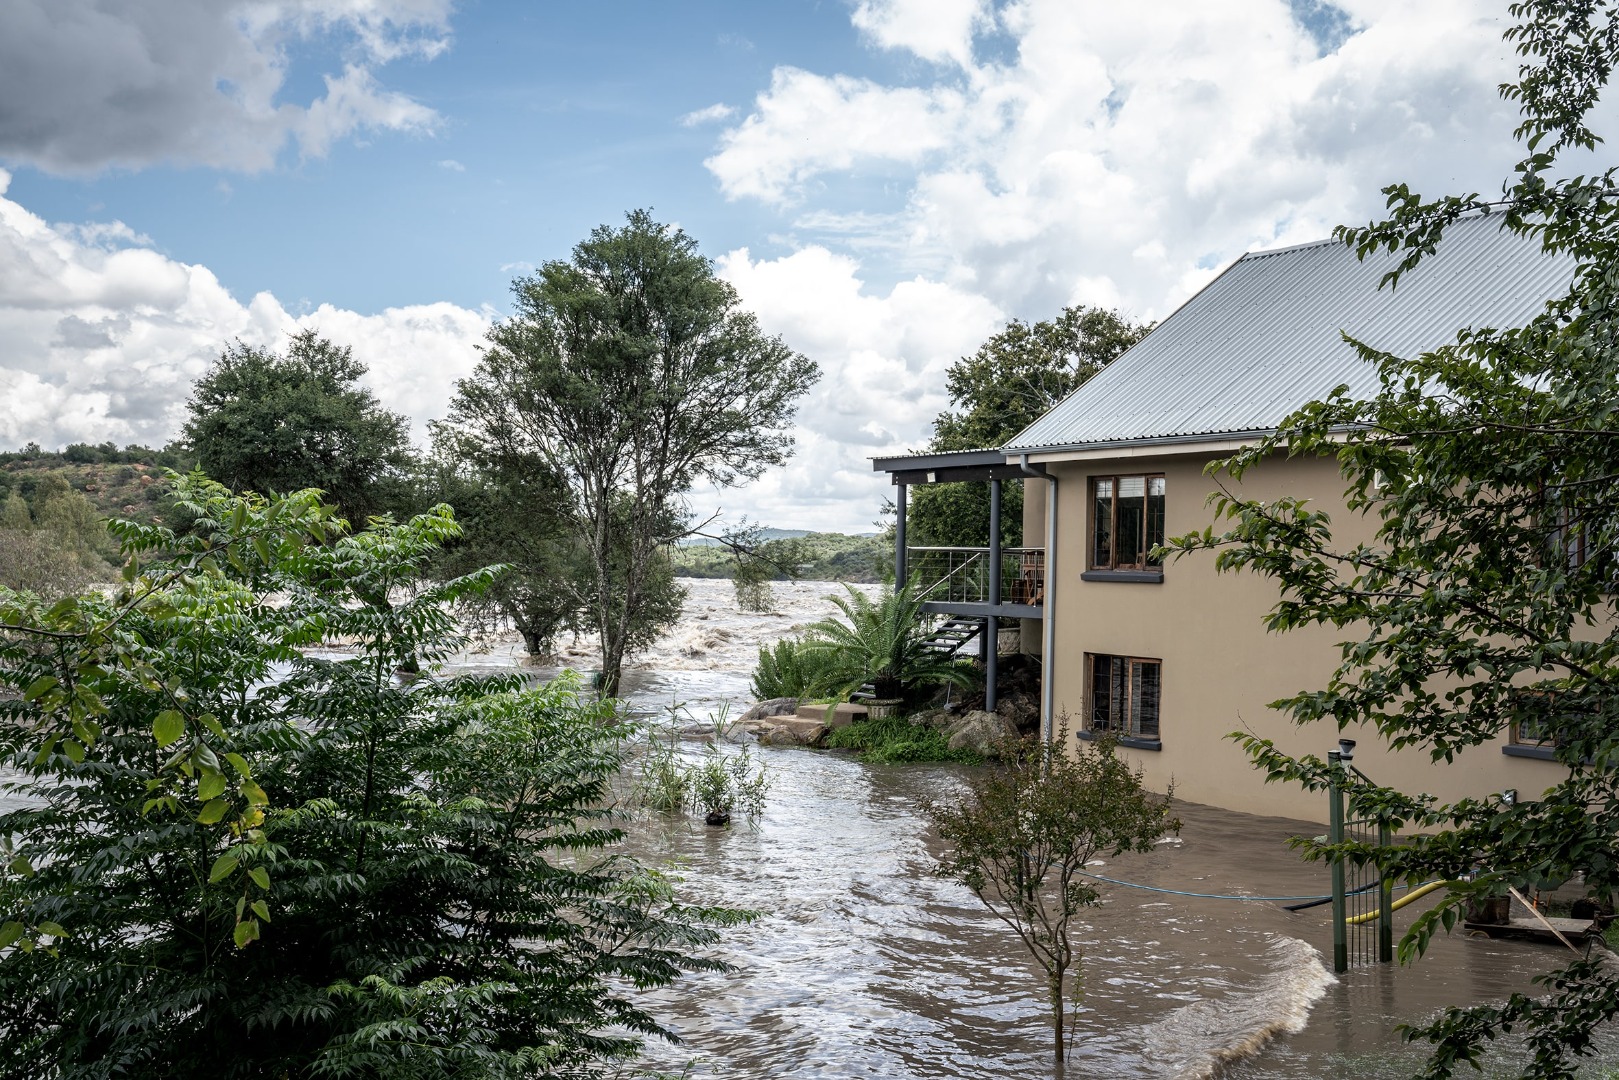 Güney Afrika’da sel felaketi: 11 ölü 2